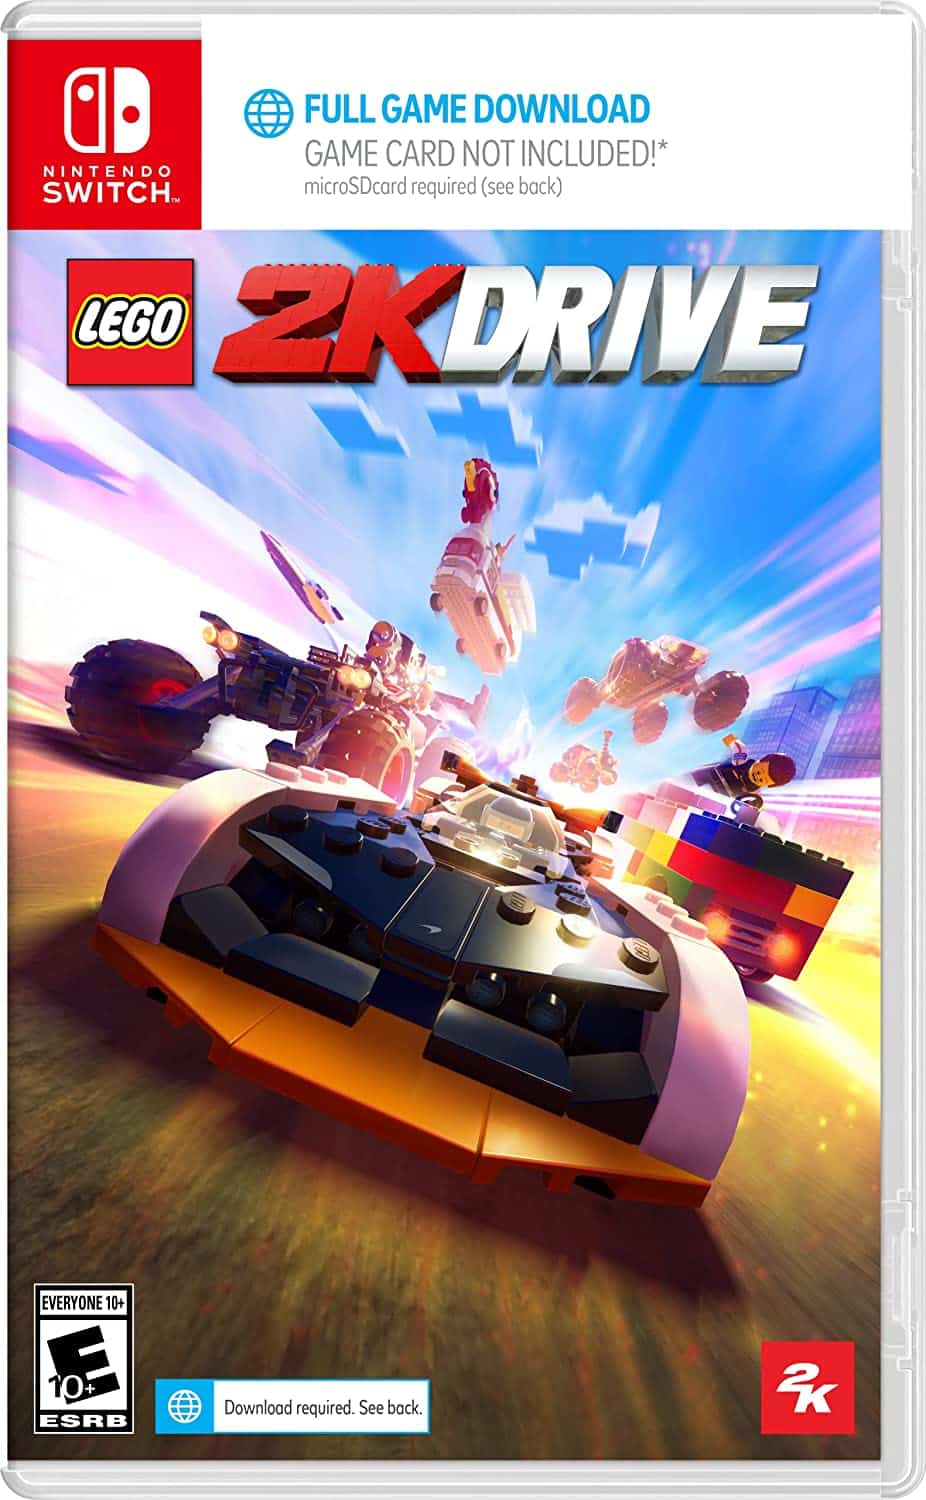 LEGO 2K Drive vendrá con un código de descarga si compras en físico